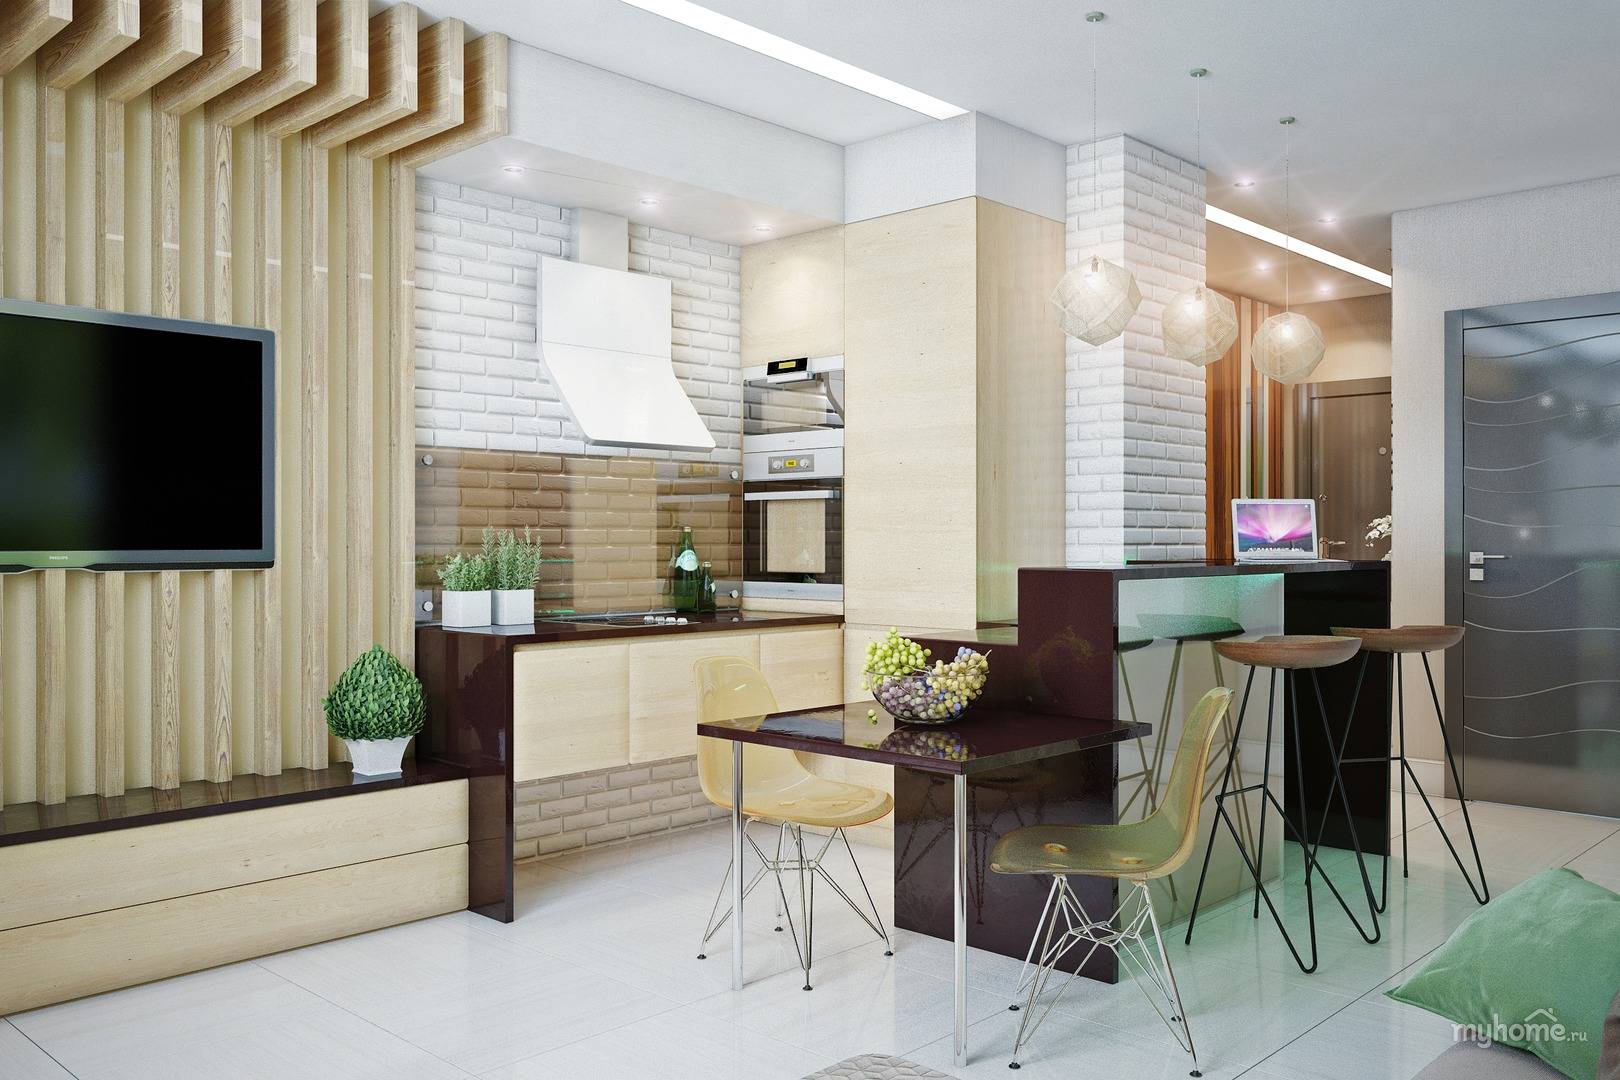 Кухня 22 квадратных метра фото дизайн – дизайн кухни-гостиной площадью 19-20 кв. м (73 фото): планировка совмещенных помещений